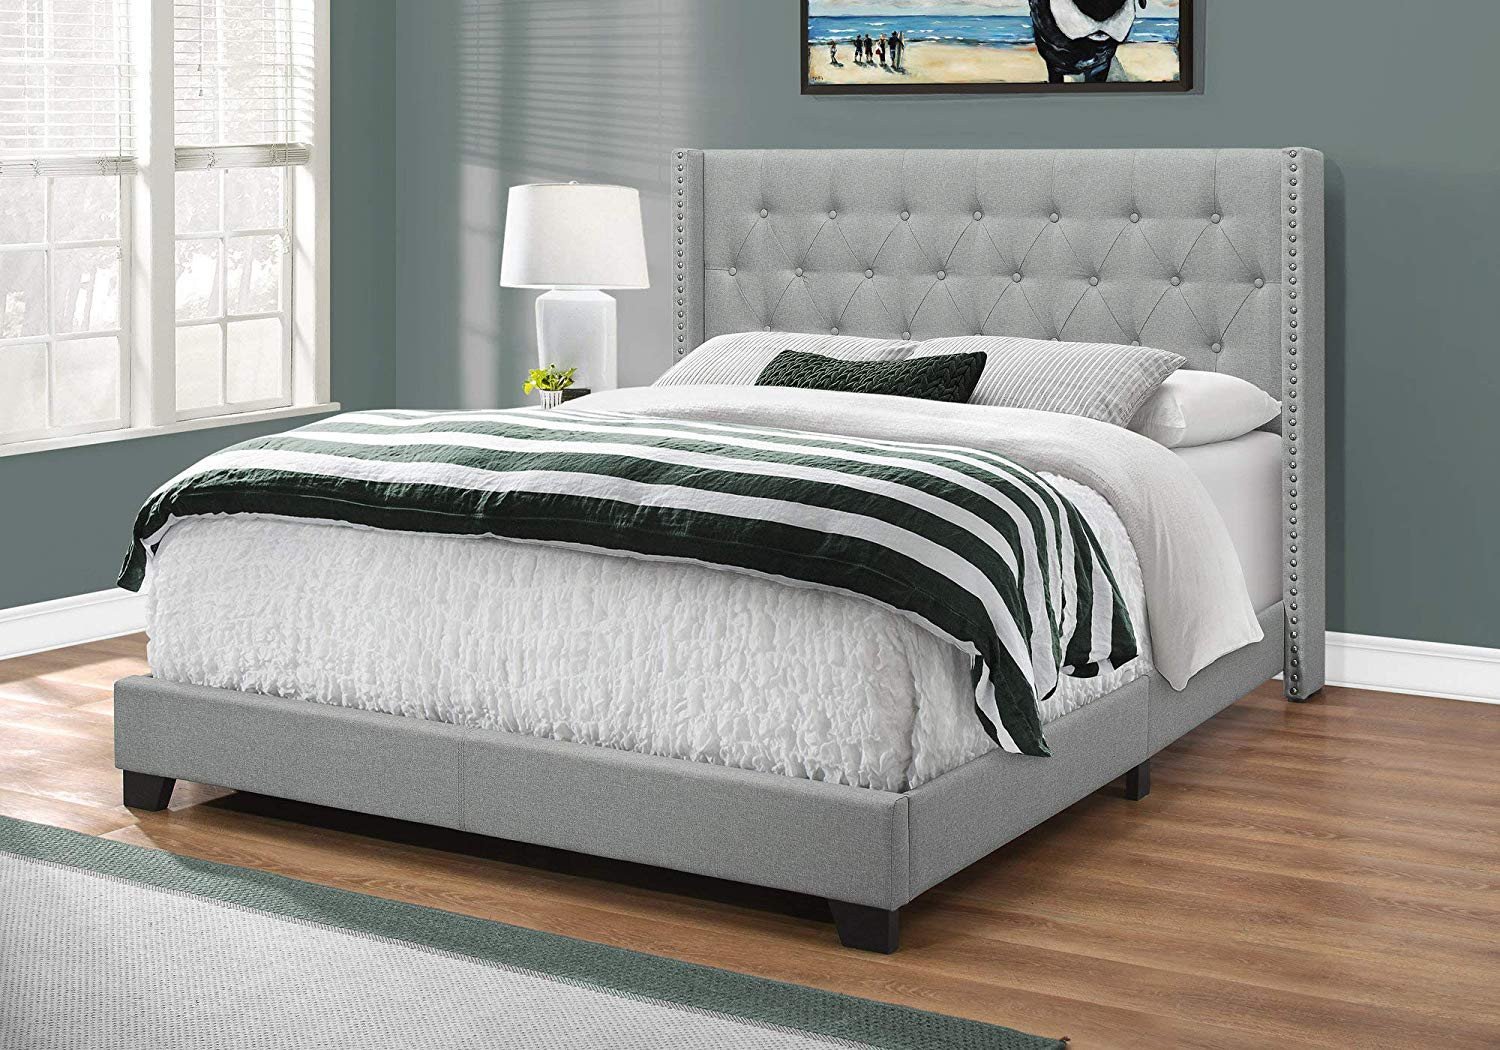 Luxury Master Bedroom Furniture Lovely Amazon Homeroots Foam Mdf solid Wood Linen Bed Queen